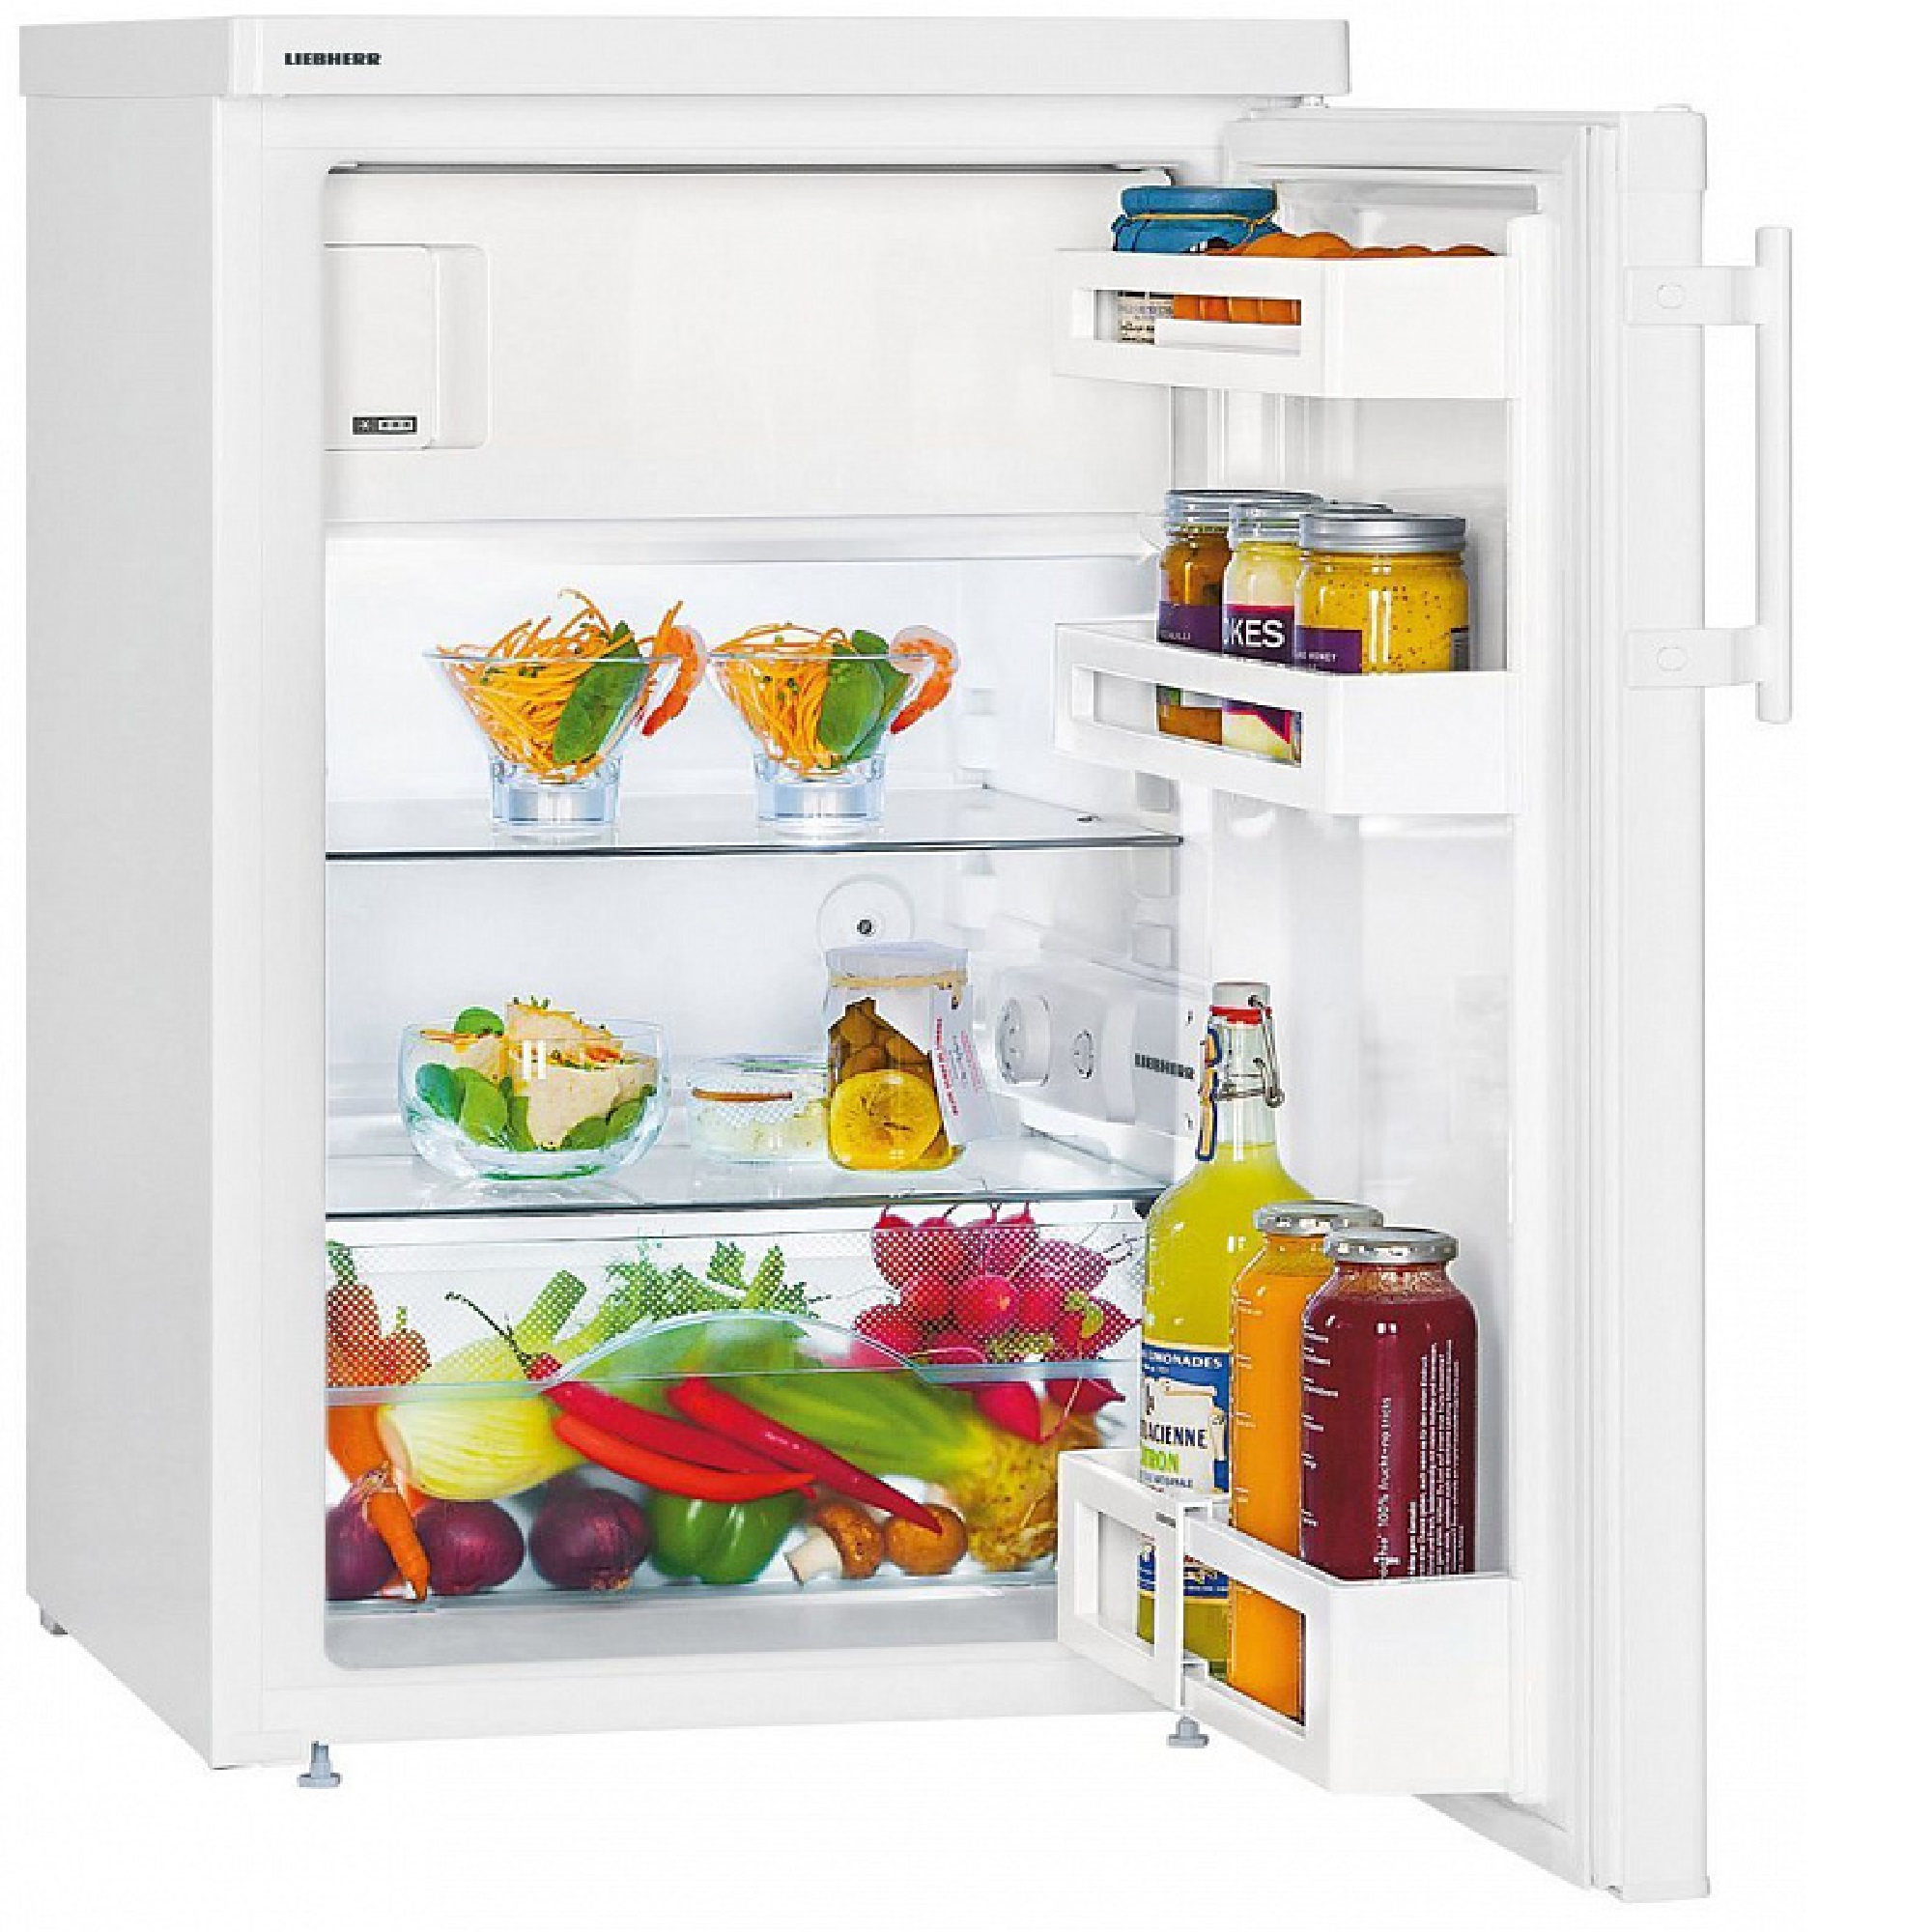 Купить низкий холодильник. Холодильник Liebherr t 1414. Однокамерный холодильник Liebherr t 1414-22. Liebherr Comfort TSL 1414. Холодильник Liebherr KT 1414.